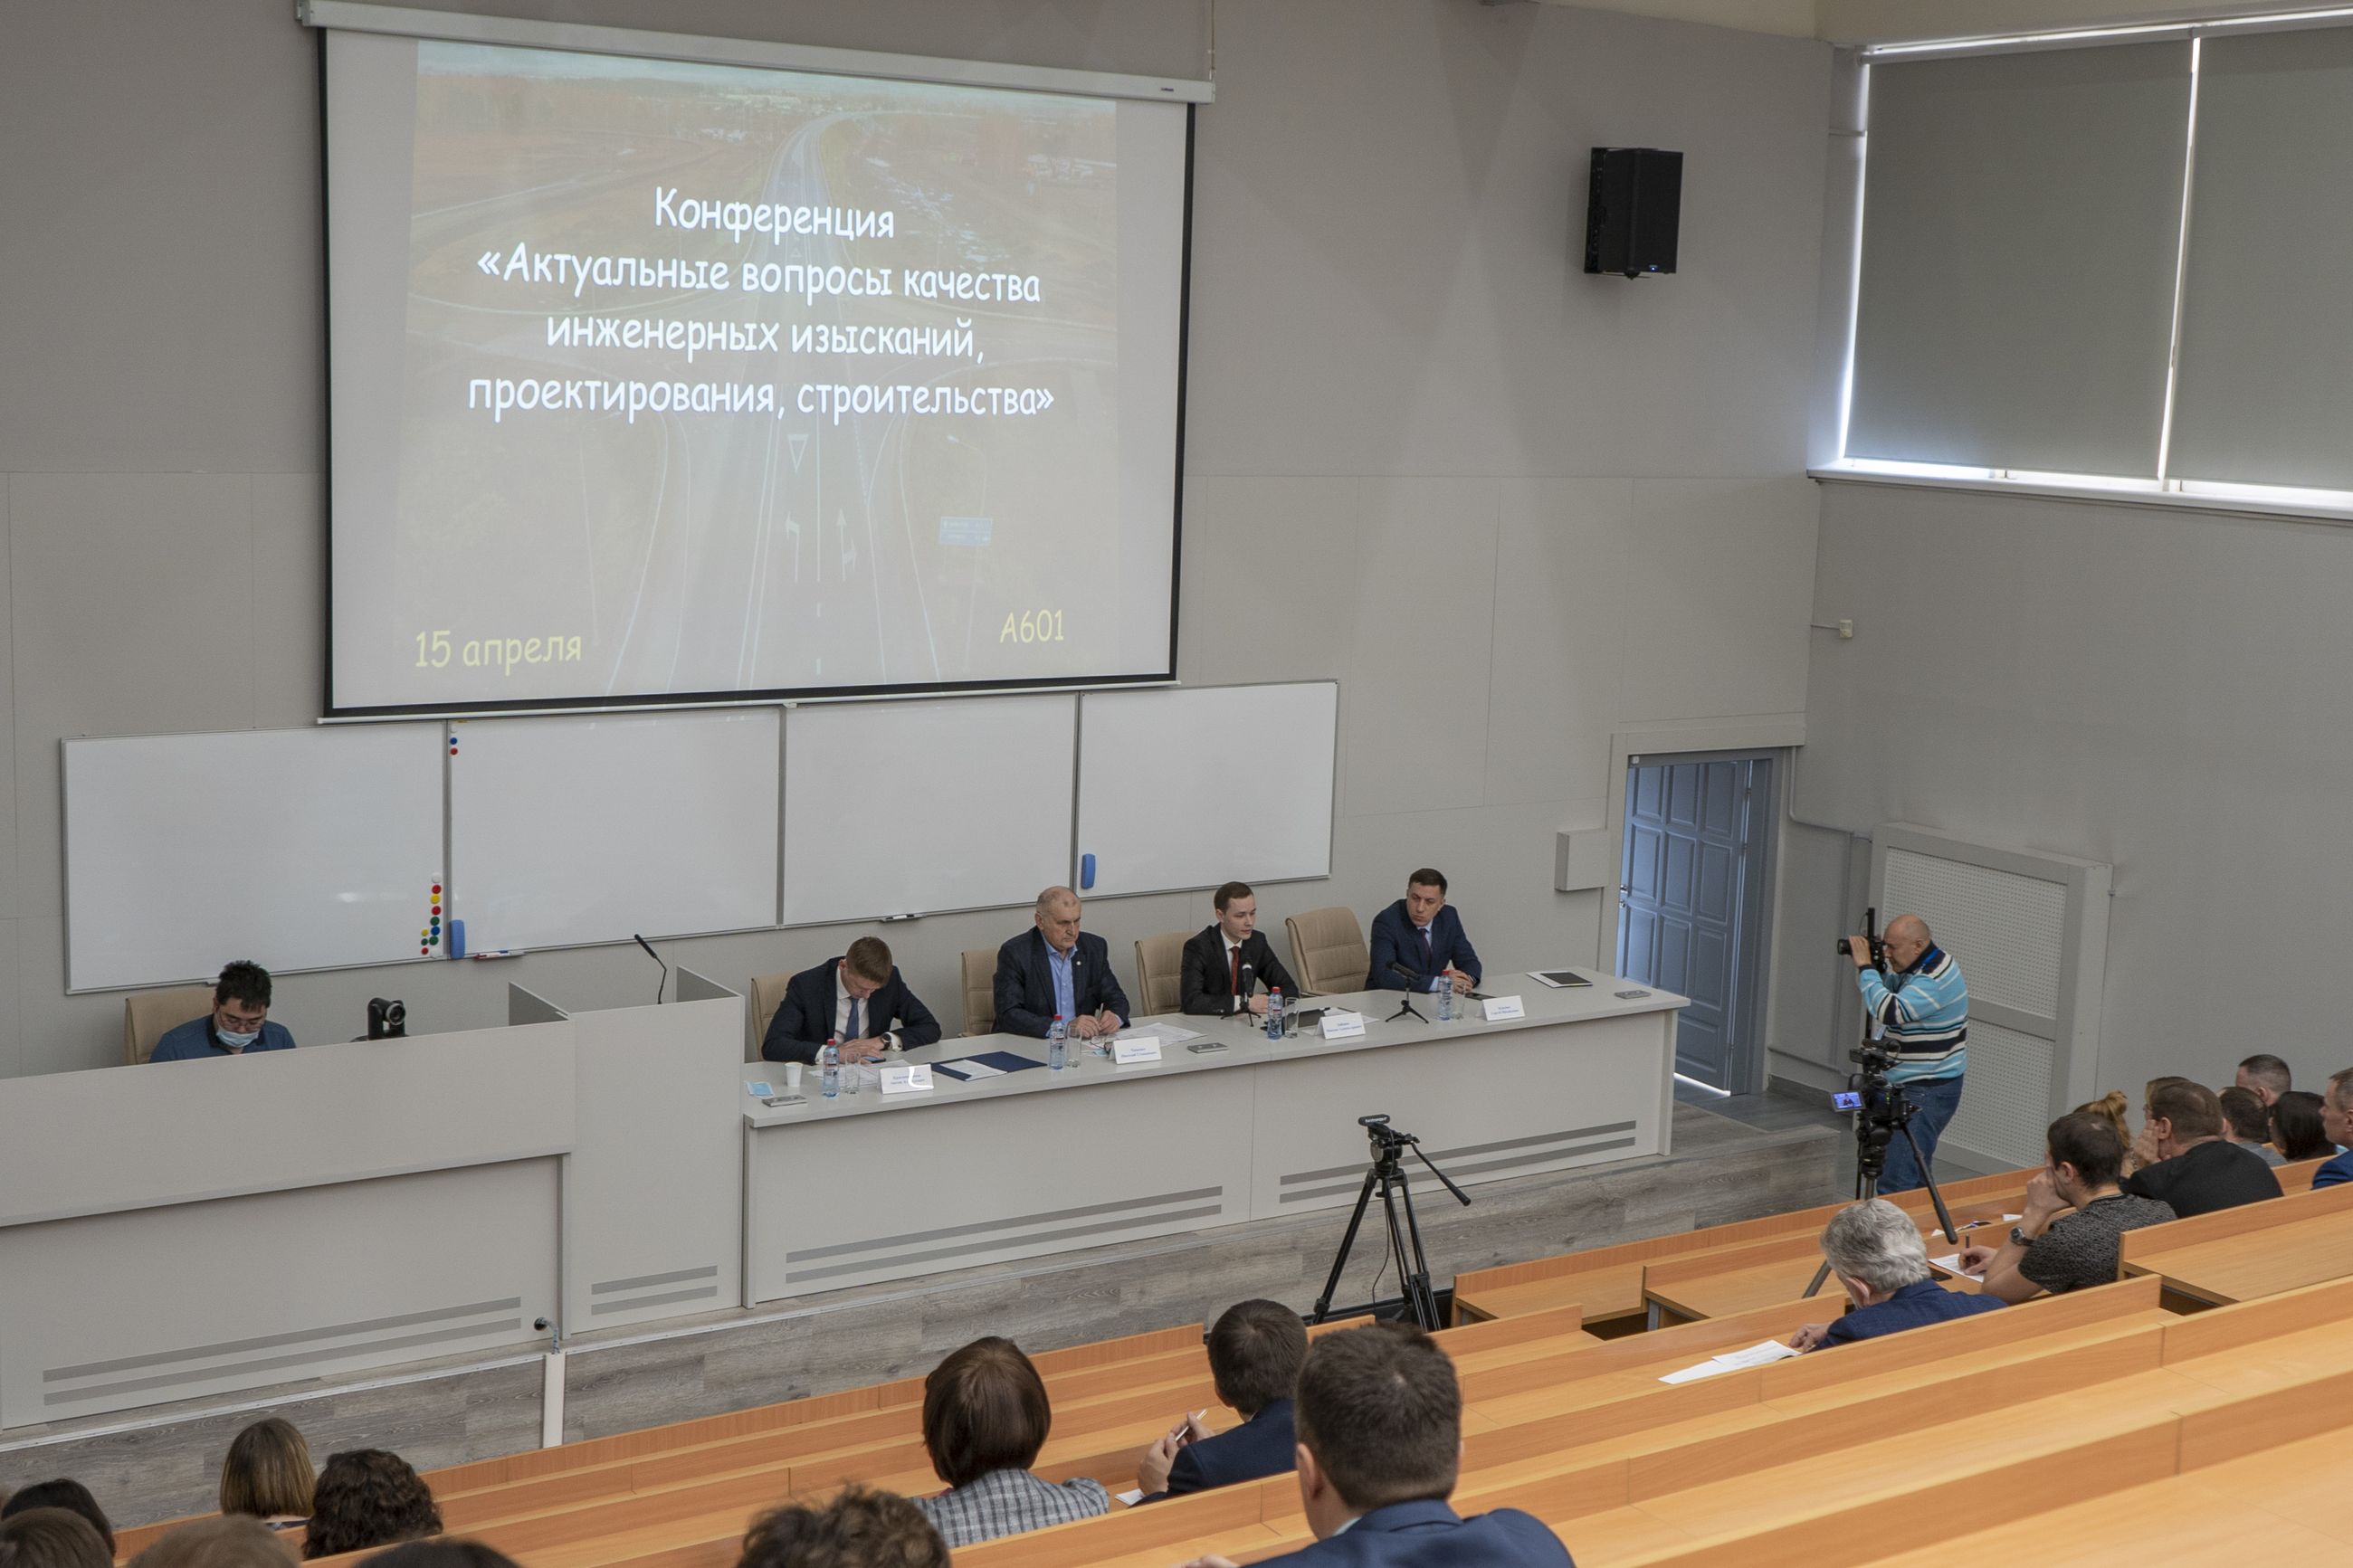 Конференция «Актуальные вопросы качества инженерных изысканий, проектирования, строительства» прошла в Иркутске.